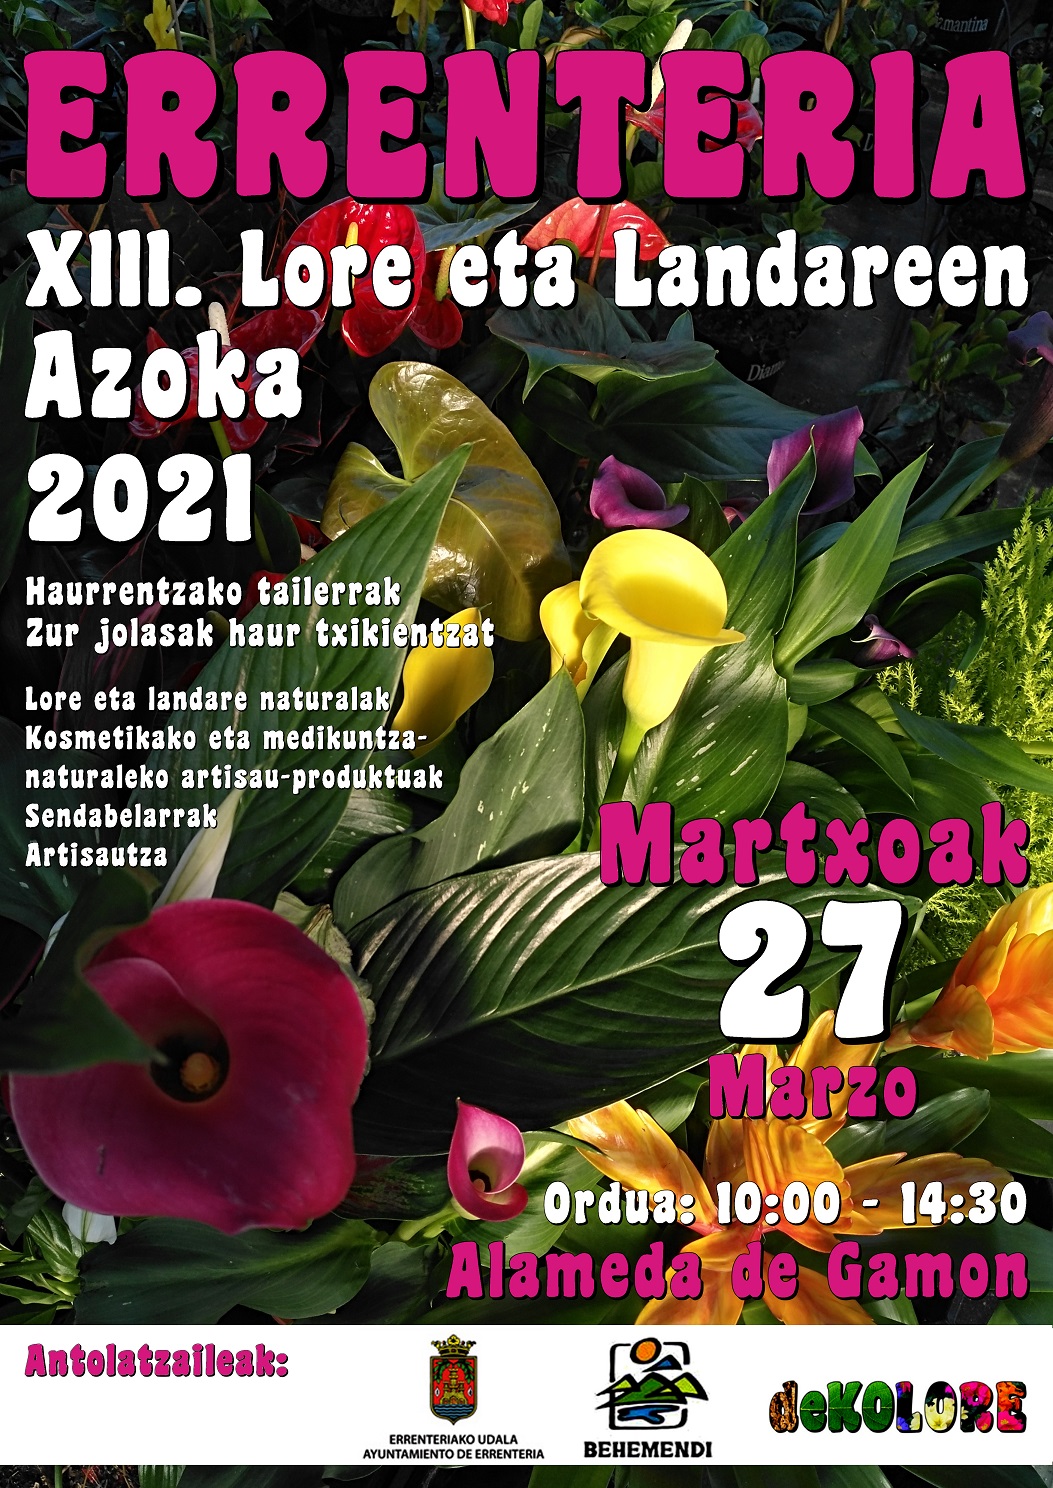 Mañana tendrá lugar la XII Feria de las Flores y Plantas de Errenteria